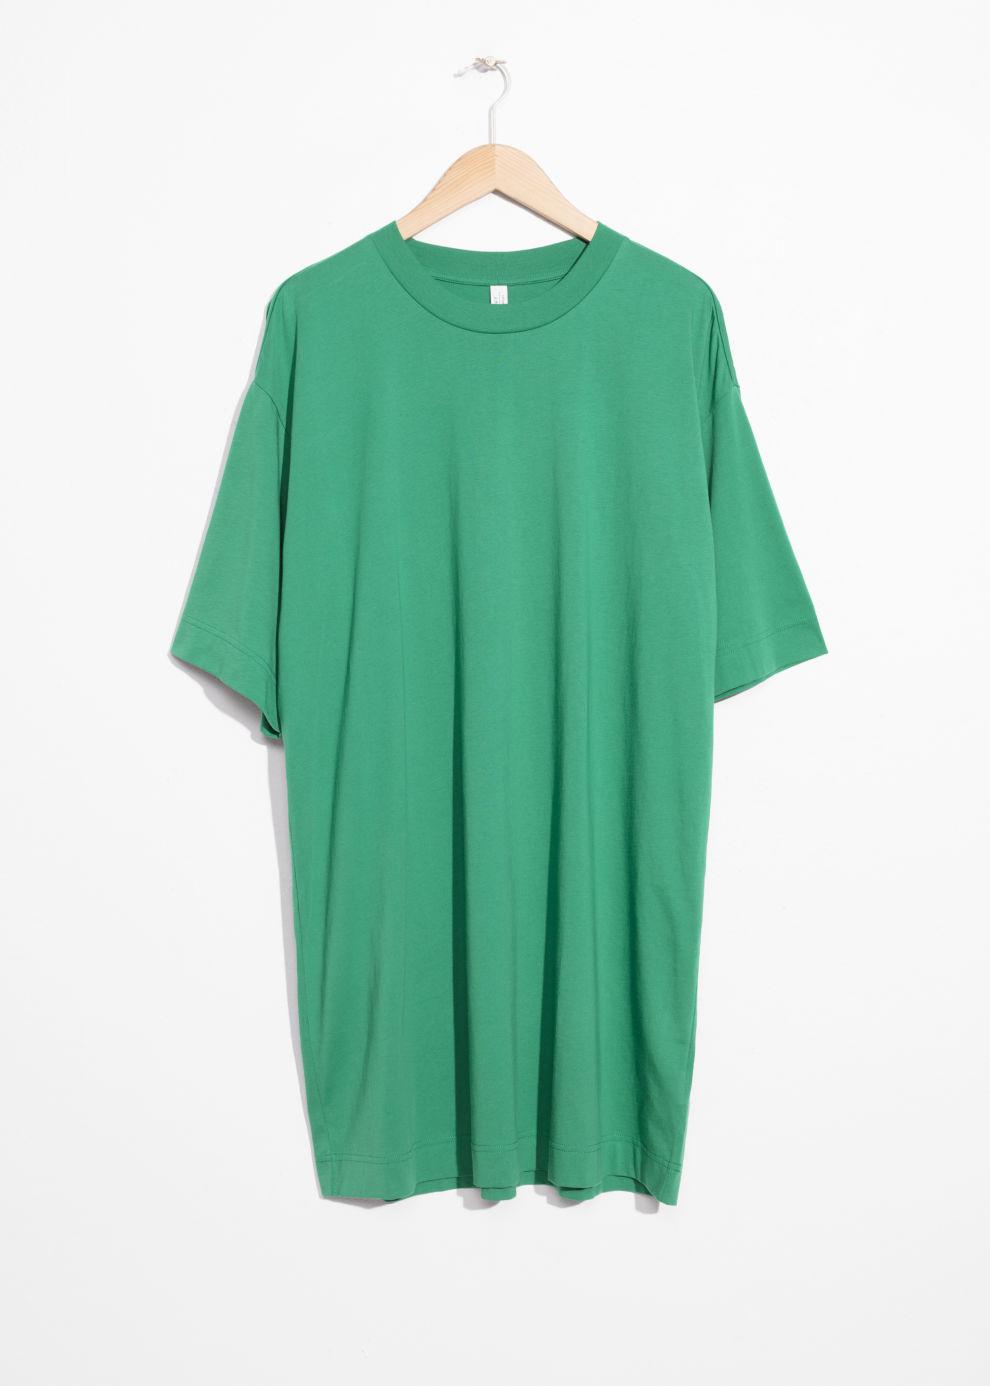 green oversized t shirt dress